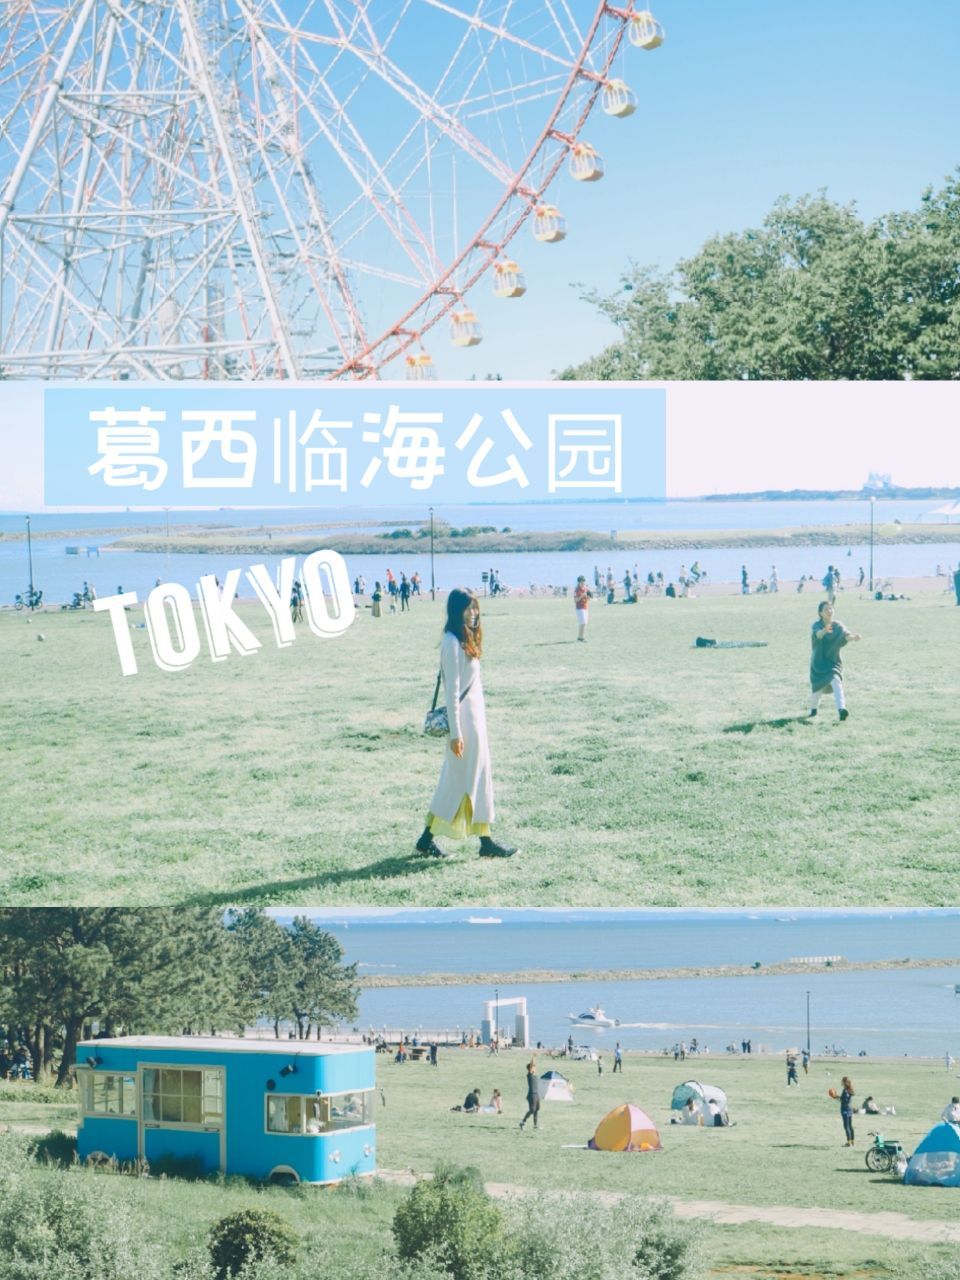 东京葛西临海公园|东京都内海边景色摄影圣地 说起海景，东京都内最有名的莫过于台场。但是如果想拍日系小